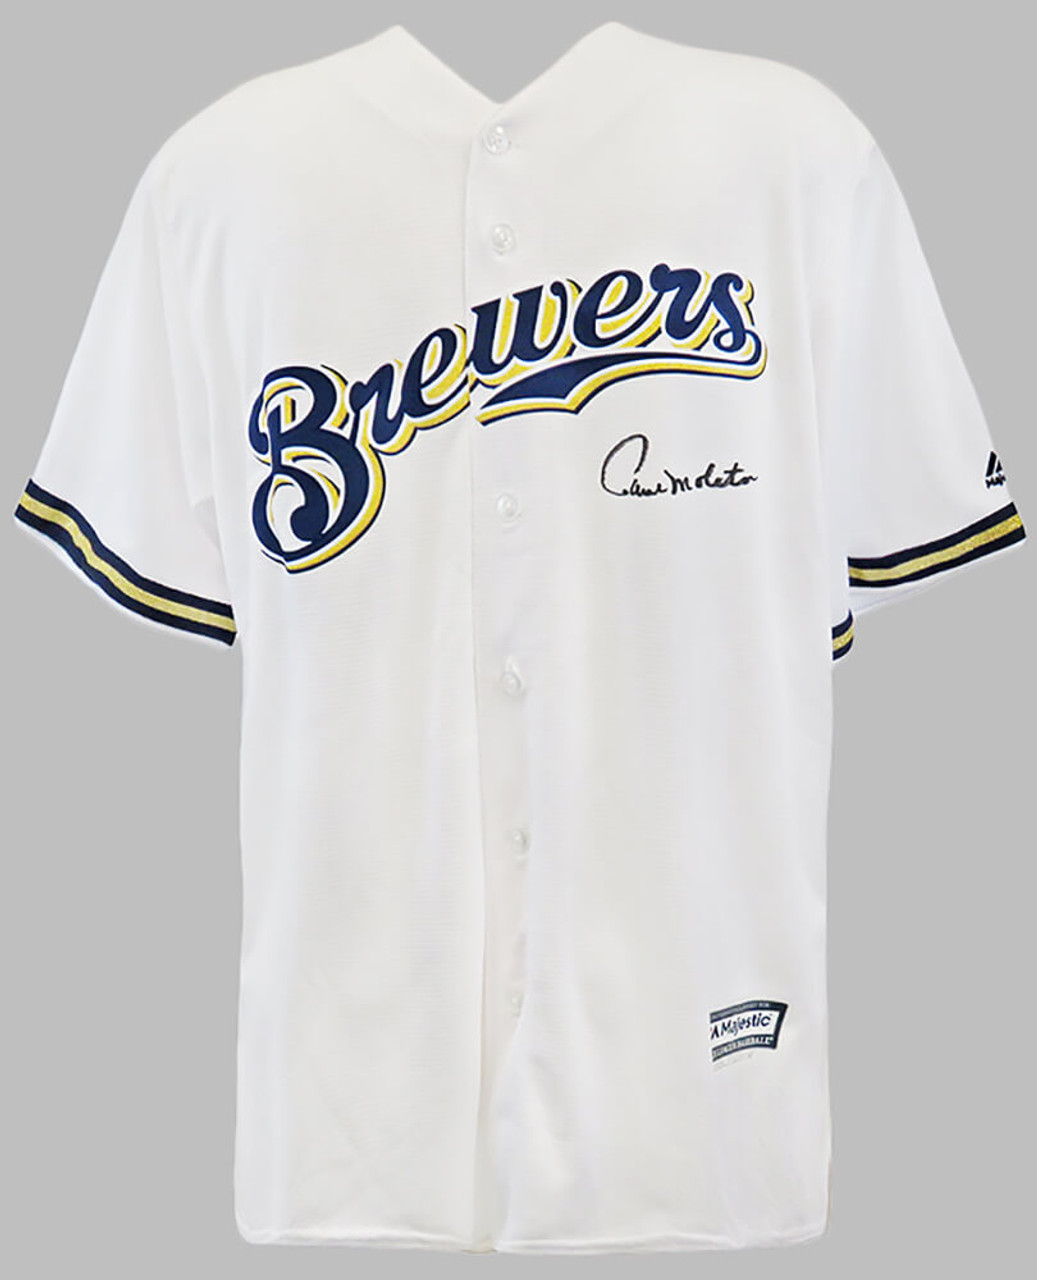 Official Milwaukee Brewers Jerseys, Brewers Baseball Jerseys, Uniforms